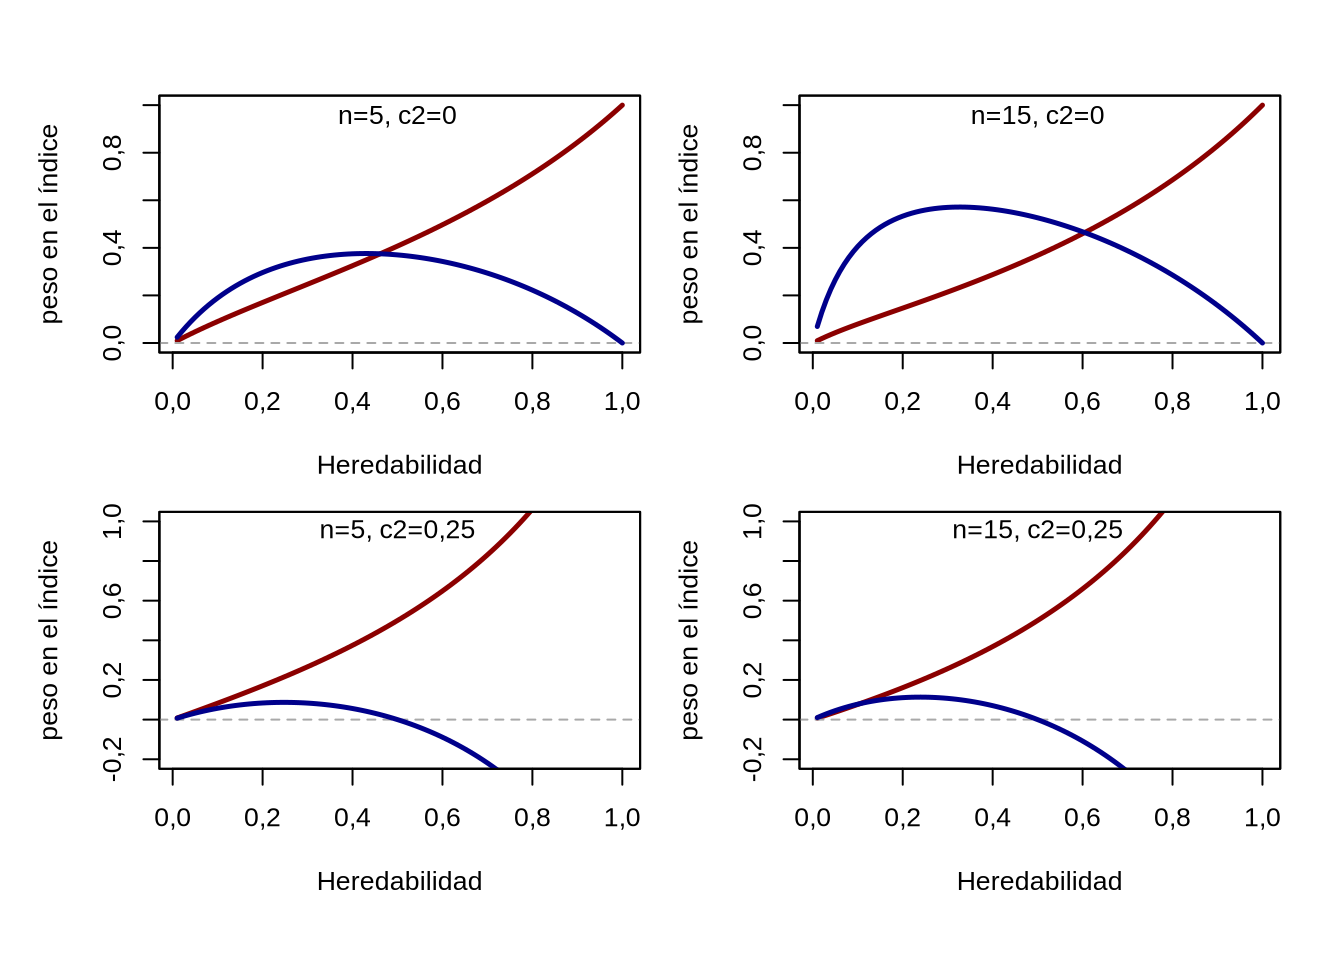 Comportamiento de los coeficientes para el aporte del fenotipo individual (en azul) y del promedio de \({n}\) hermanos enteros del candidato, de acuerdo a la heredabilidad \({h^2}\) y la proporción de varianza del ambiente común \({c^2}\). A medida de que crece la heredabilidad, crece el coeficiente del aporte individual, mientras que el aporte de los hermanos tiene un máximo a hededabilidades intermedias. A medida de que crece el número de hermanos evaluados (gráficos de la izquierda versus los correspondientes a la derecha) aumenta el peso relativo del aporte de la media de hermanos enteros. Mientras que cuando \({c^2=0}\) ambos coeficientes son siempre positivos, cuando \({c^2>0}\) a partir de determinados valores de \({h^2}\) el aporte del promedio de los hermanos enteros comienza a ser negativo (gráficos de la parte inferior).